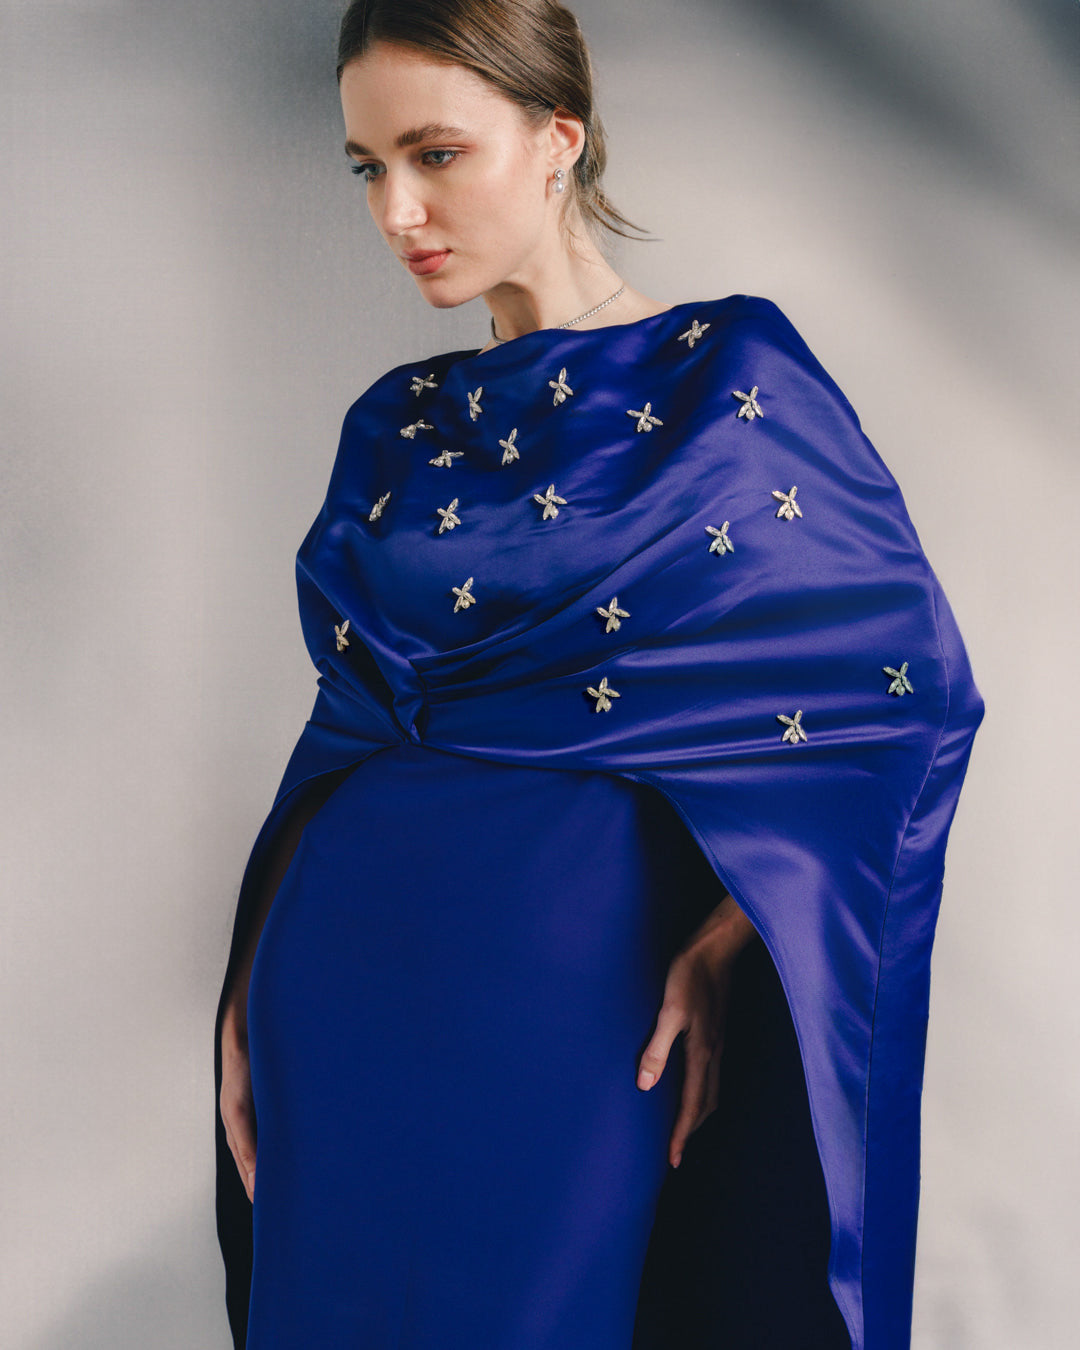 Celeste Starlight dress.